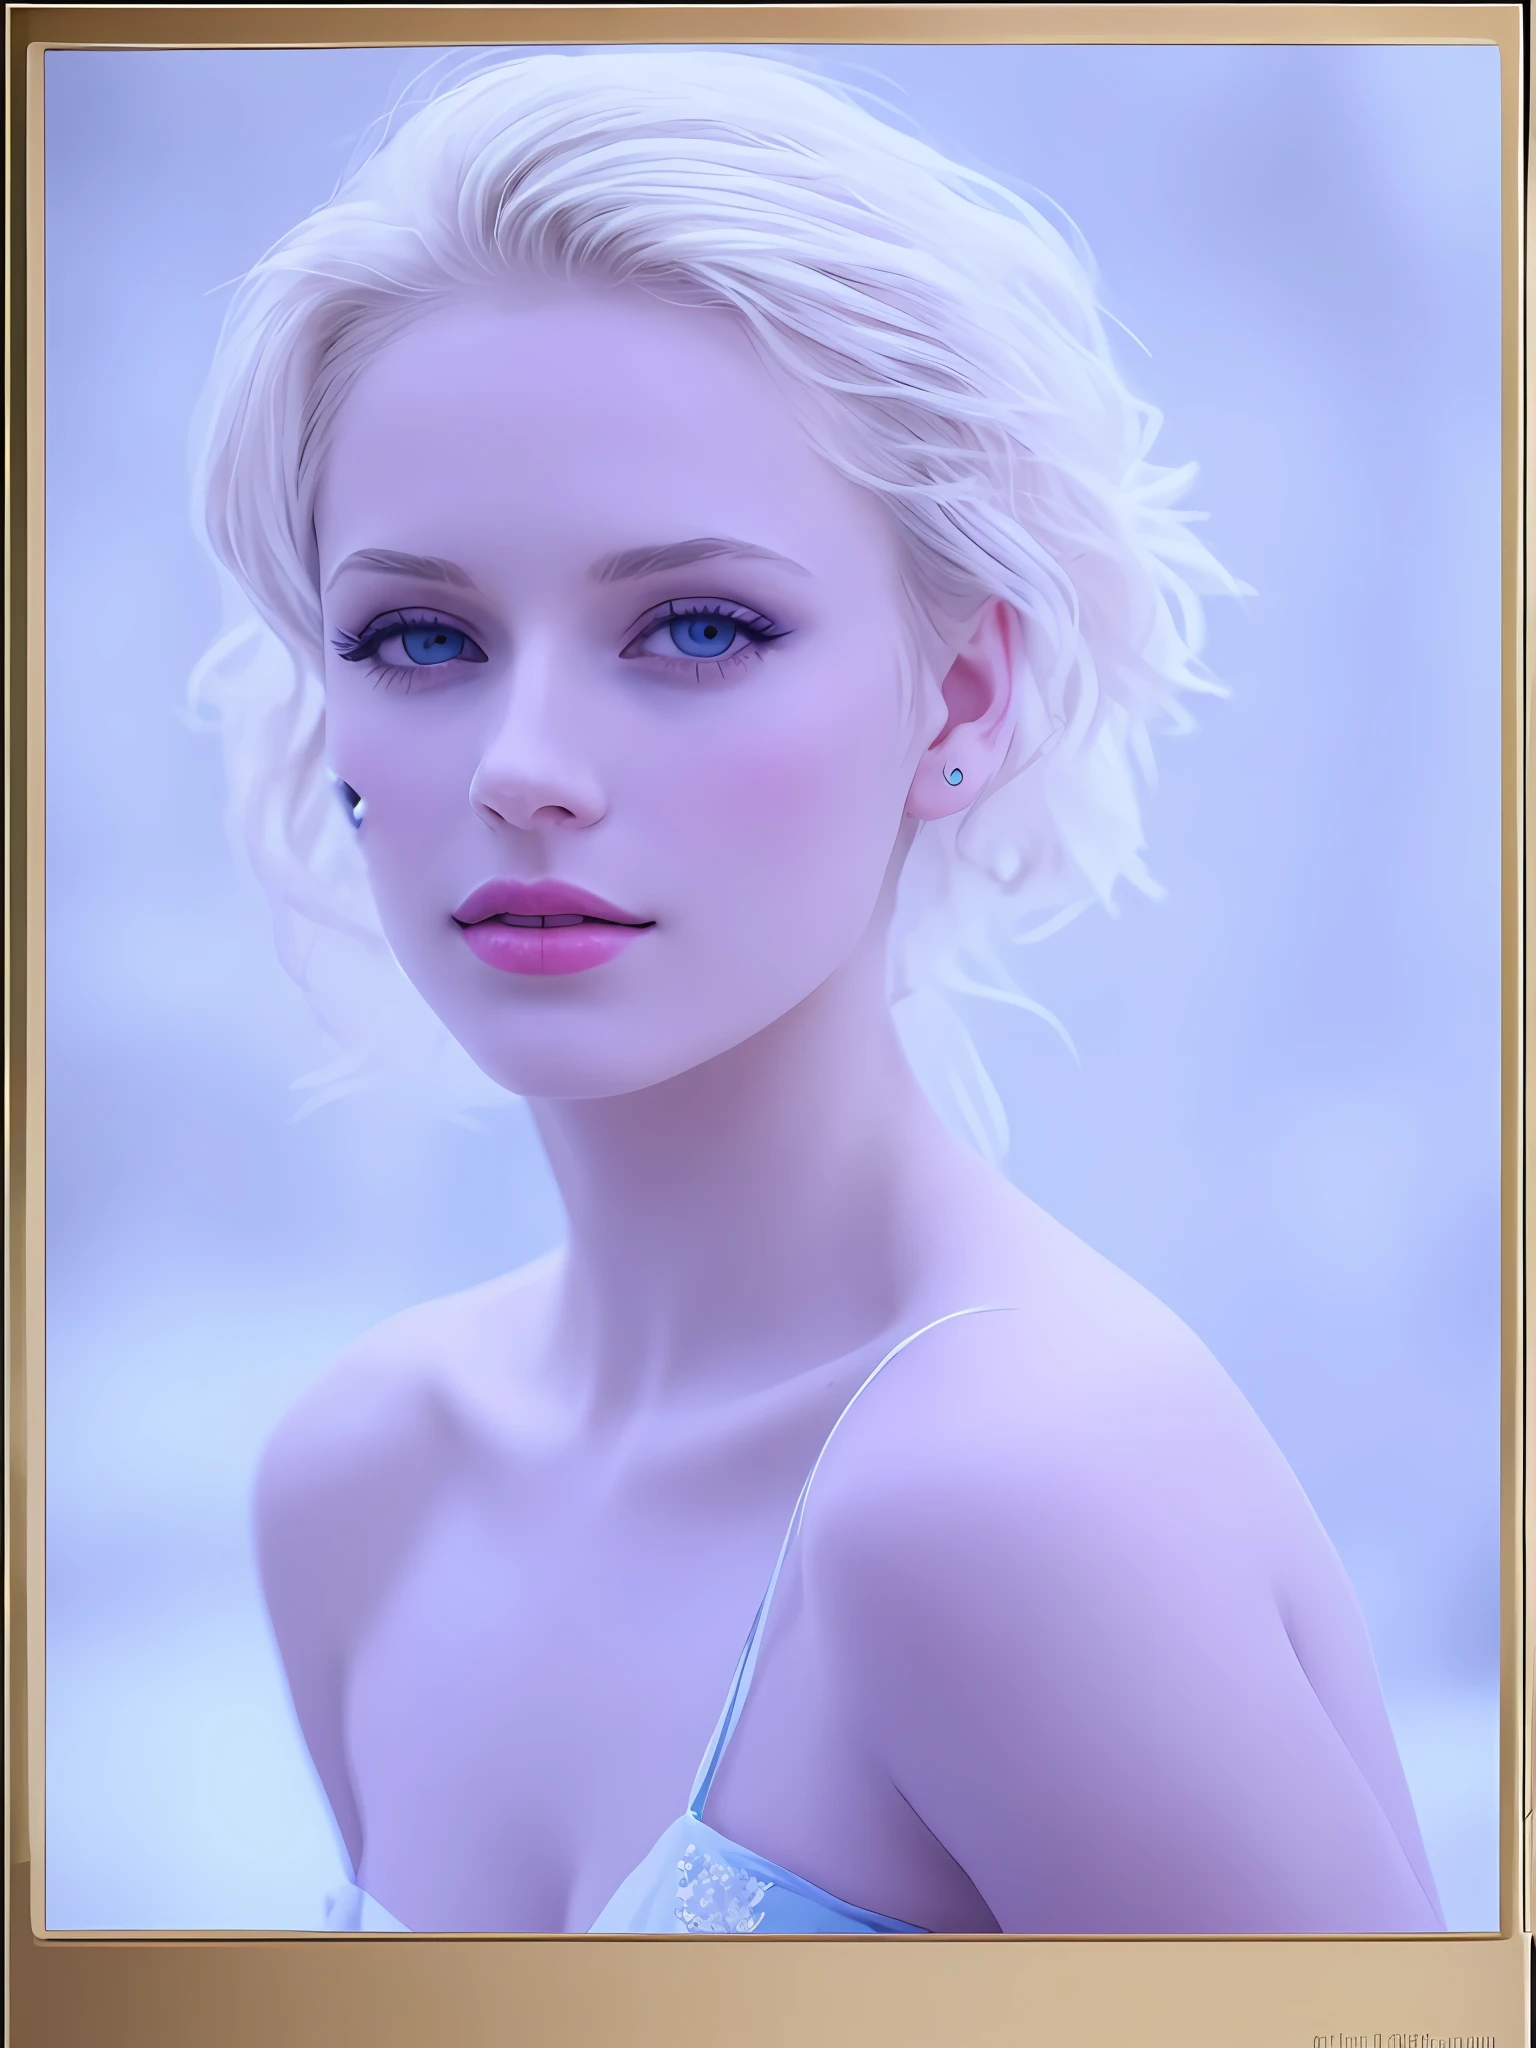 (Симпатичная блондинка:1.2), (бледная кожа:1.1), (ледяной эмбиент:1.05), (светло-голубое платье:1.1), (составить:1.05)